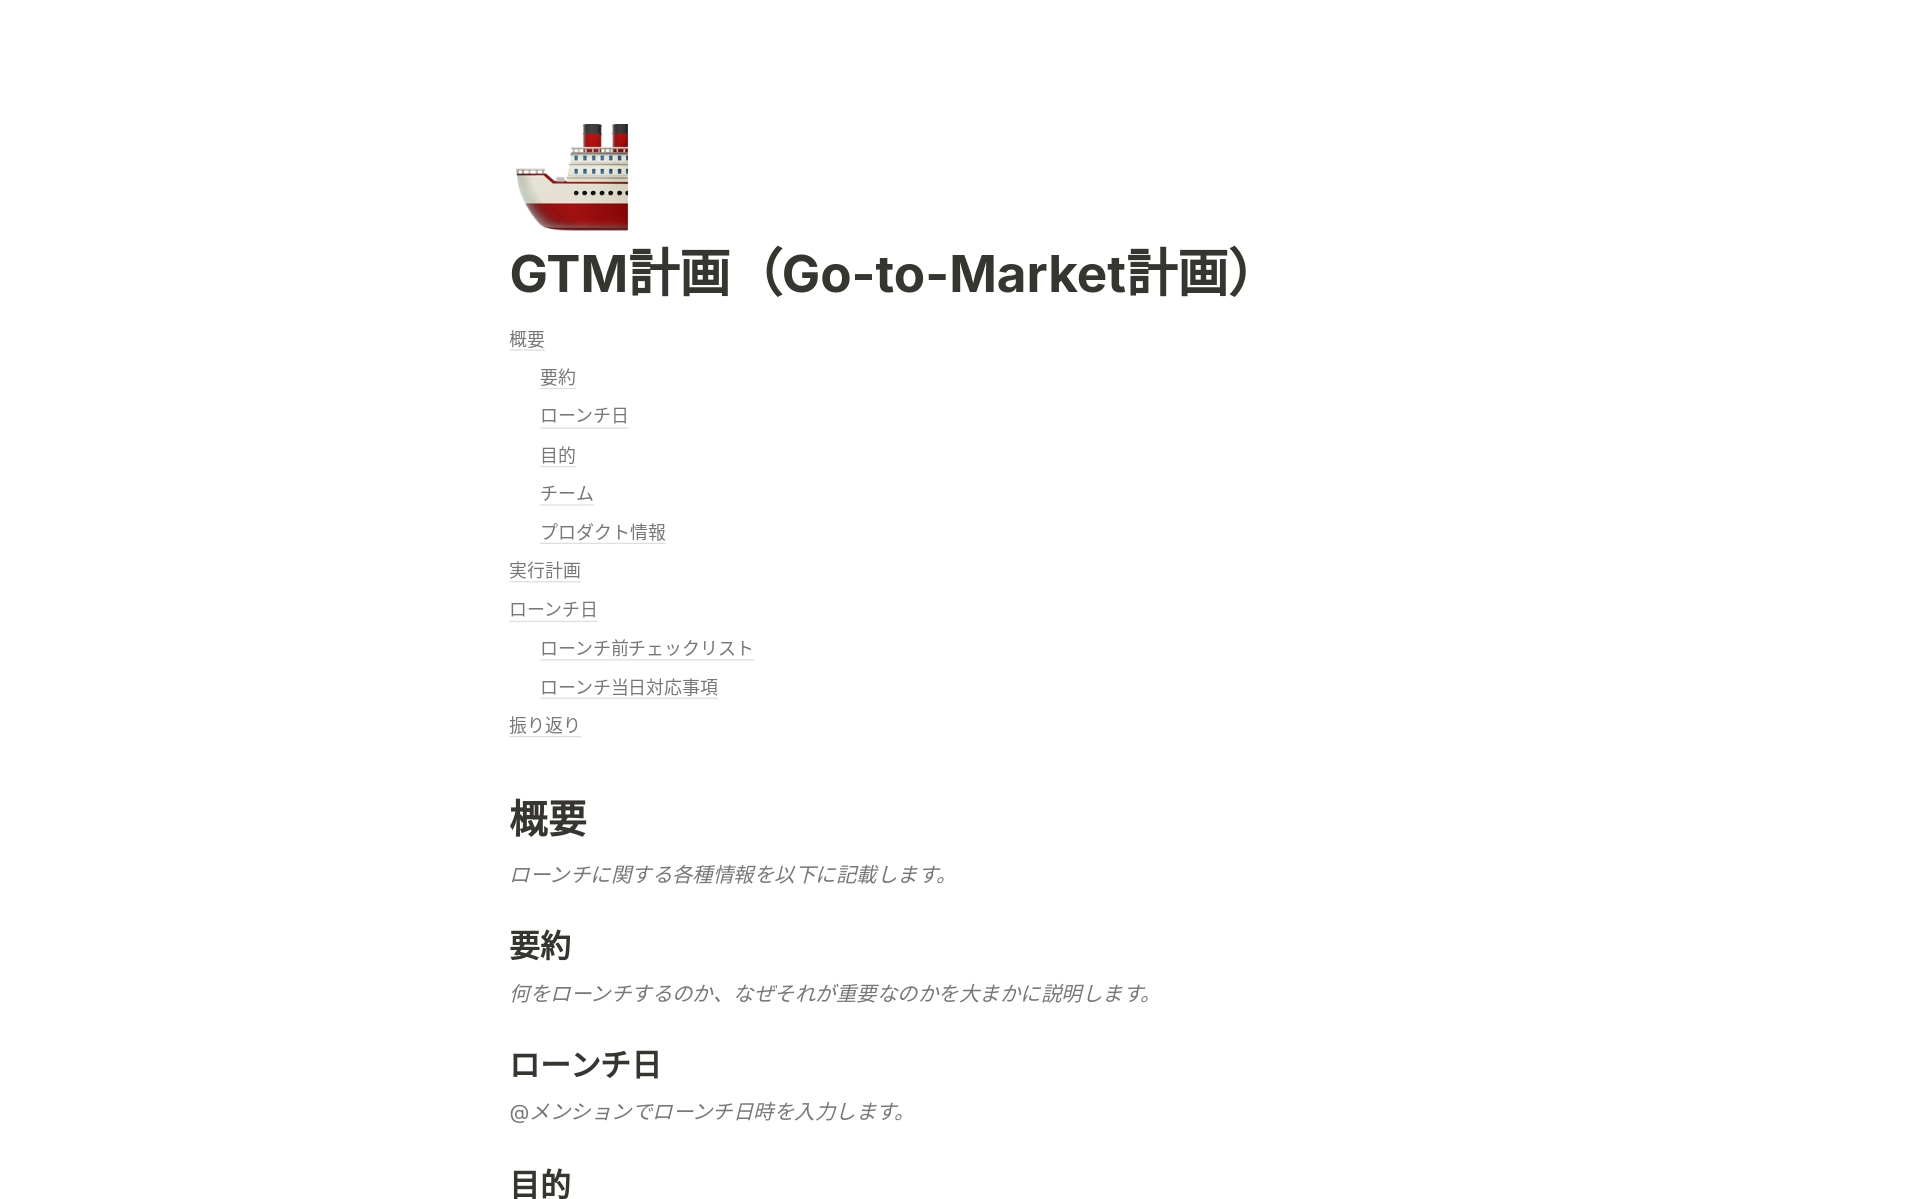 GTM計画（Go-to-Market計画）のテンプレートのプレビュー